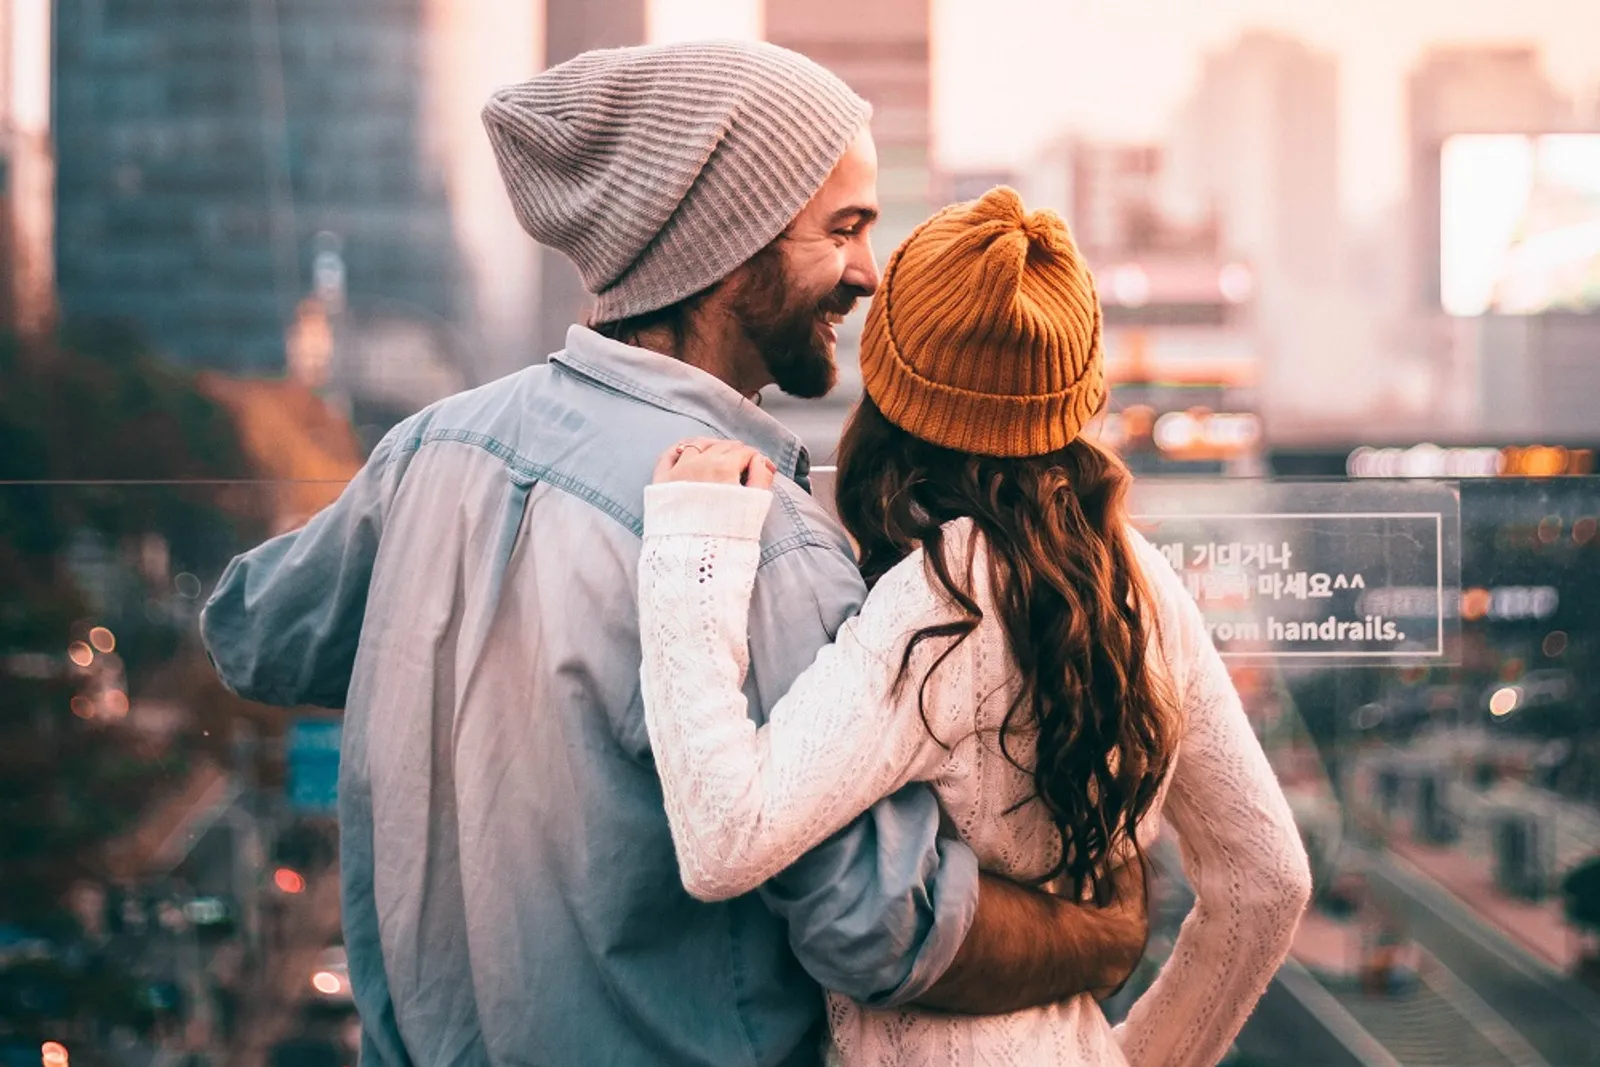 30 Ide Pesan Romantis untuk Pasangan, Sederhana tapi Ngena!